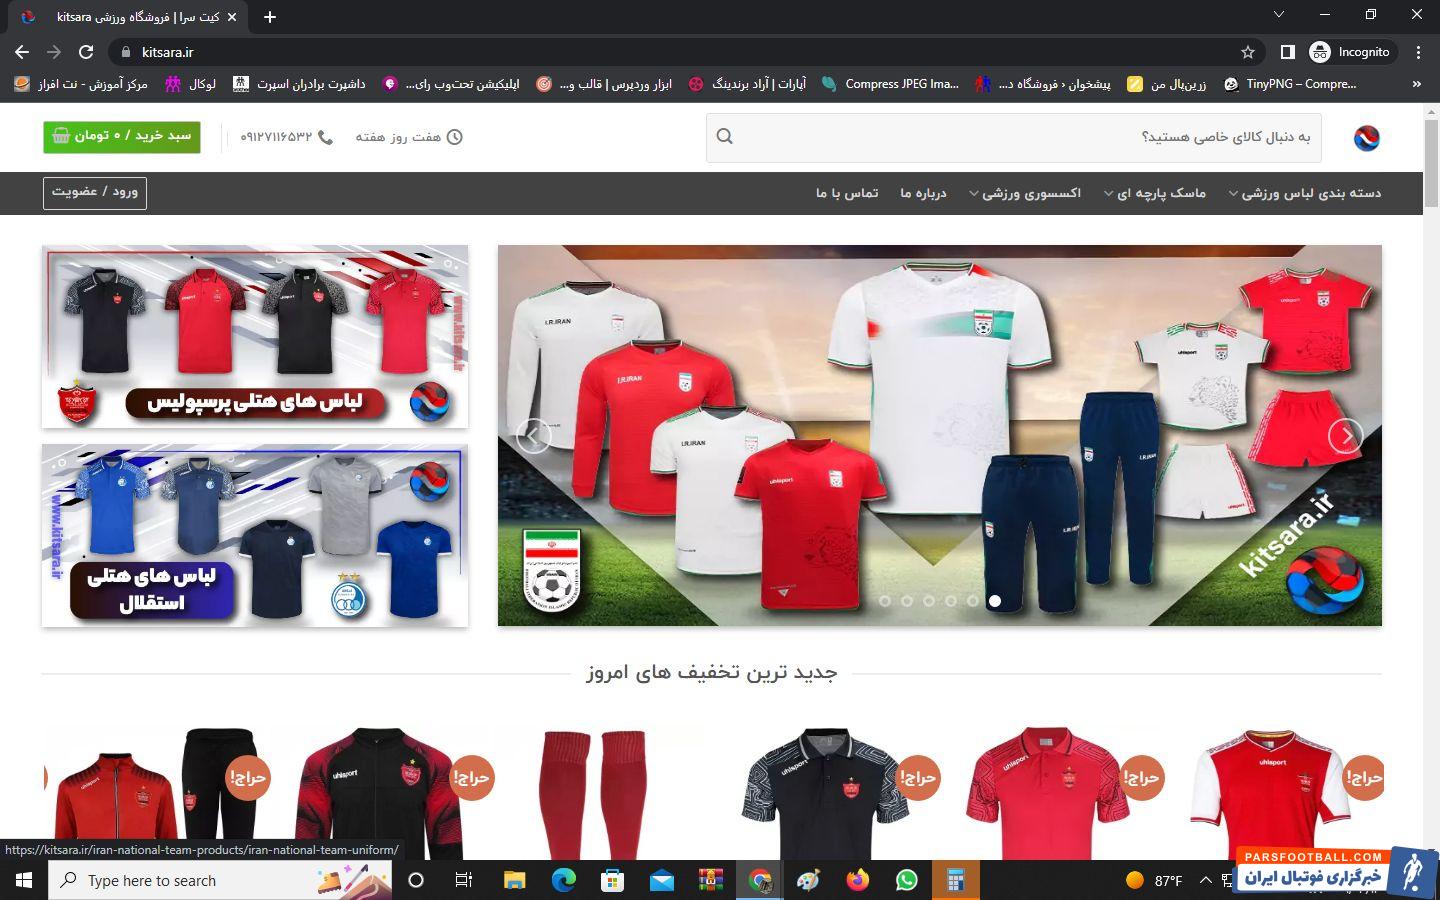 بالاخره برند لباس تیم ملی ایران برای جام جهانی کدام می شود؟